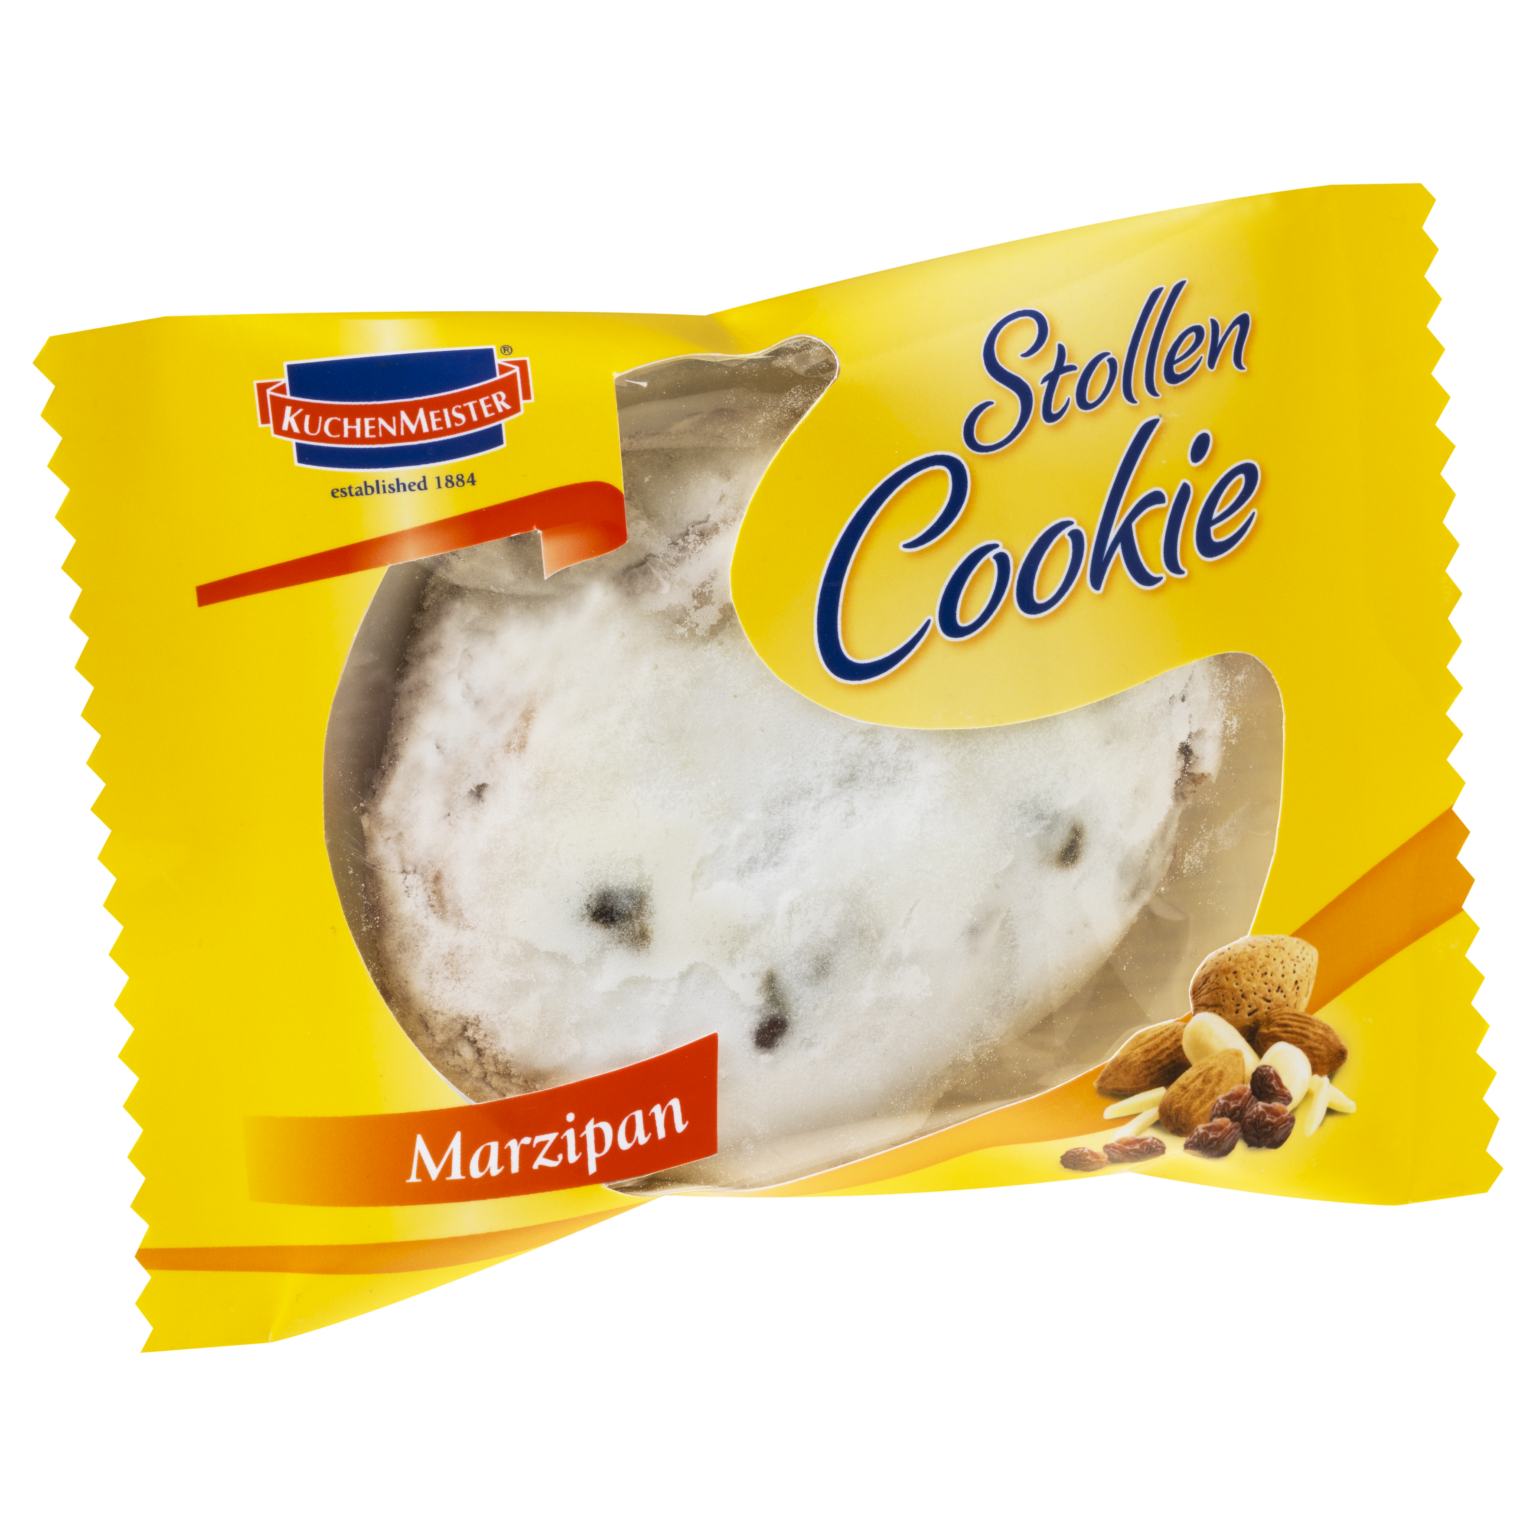 Stollen_Cookies_Marzipan_70g_Transparent